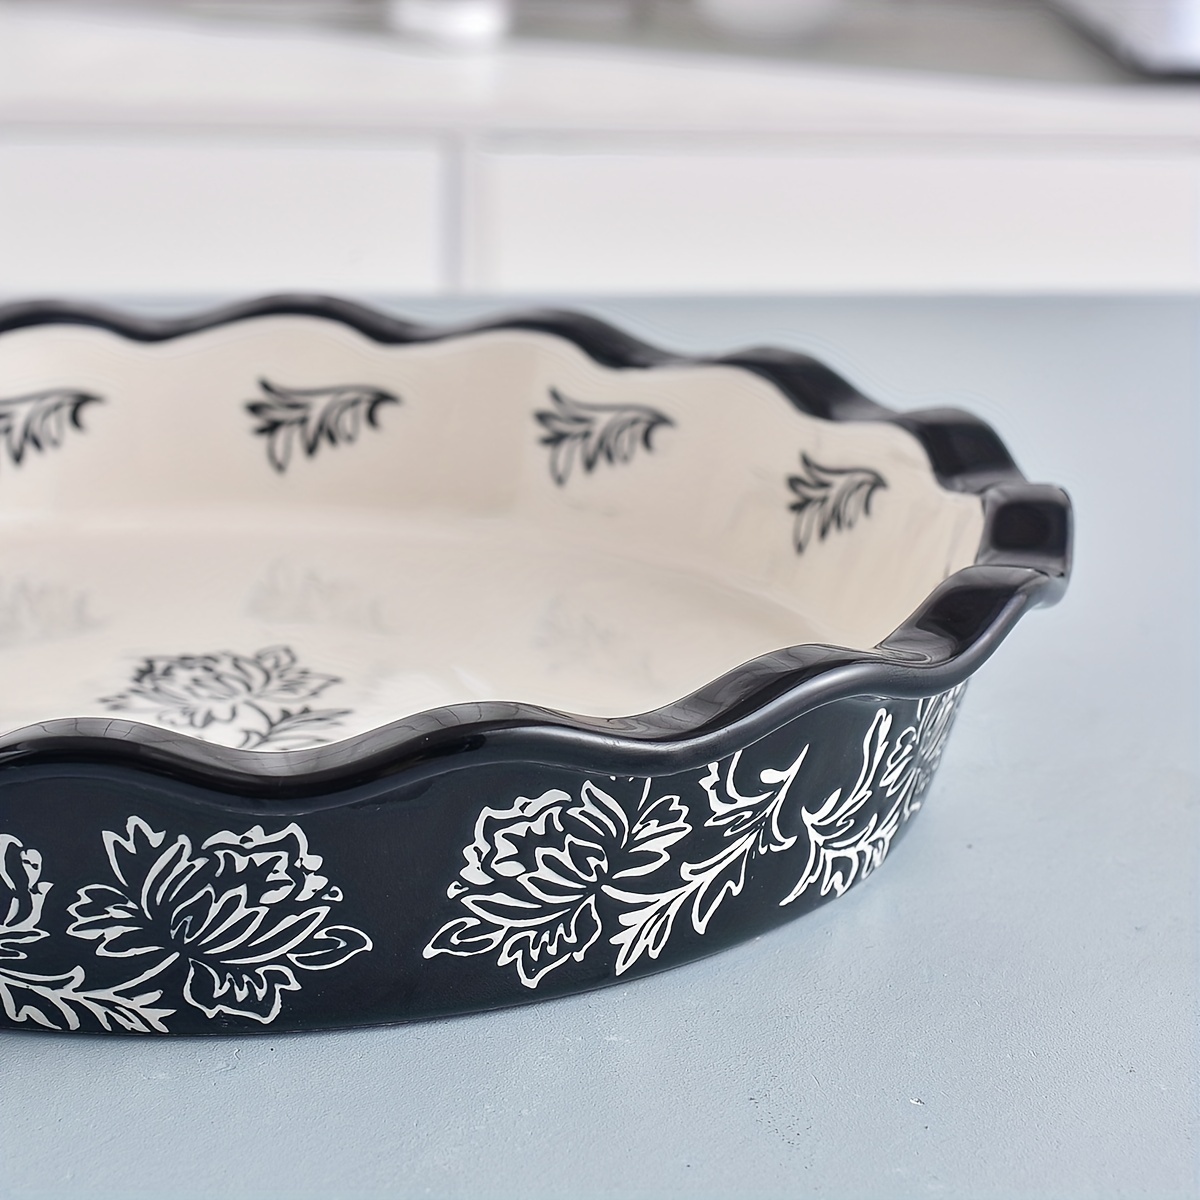 Ceramic Cake Pan – The Essential